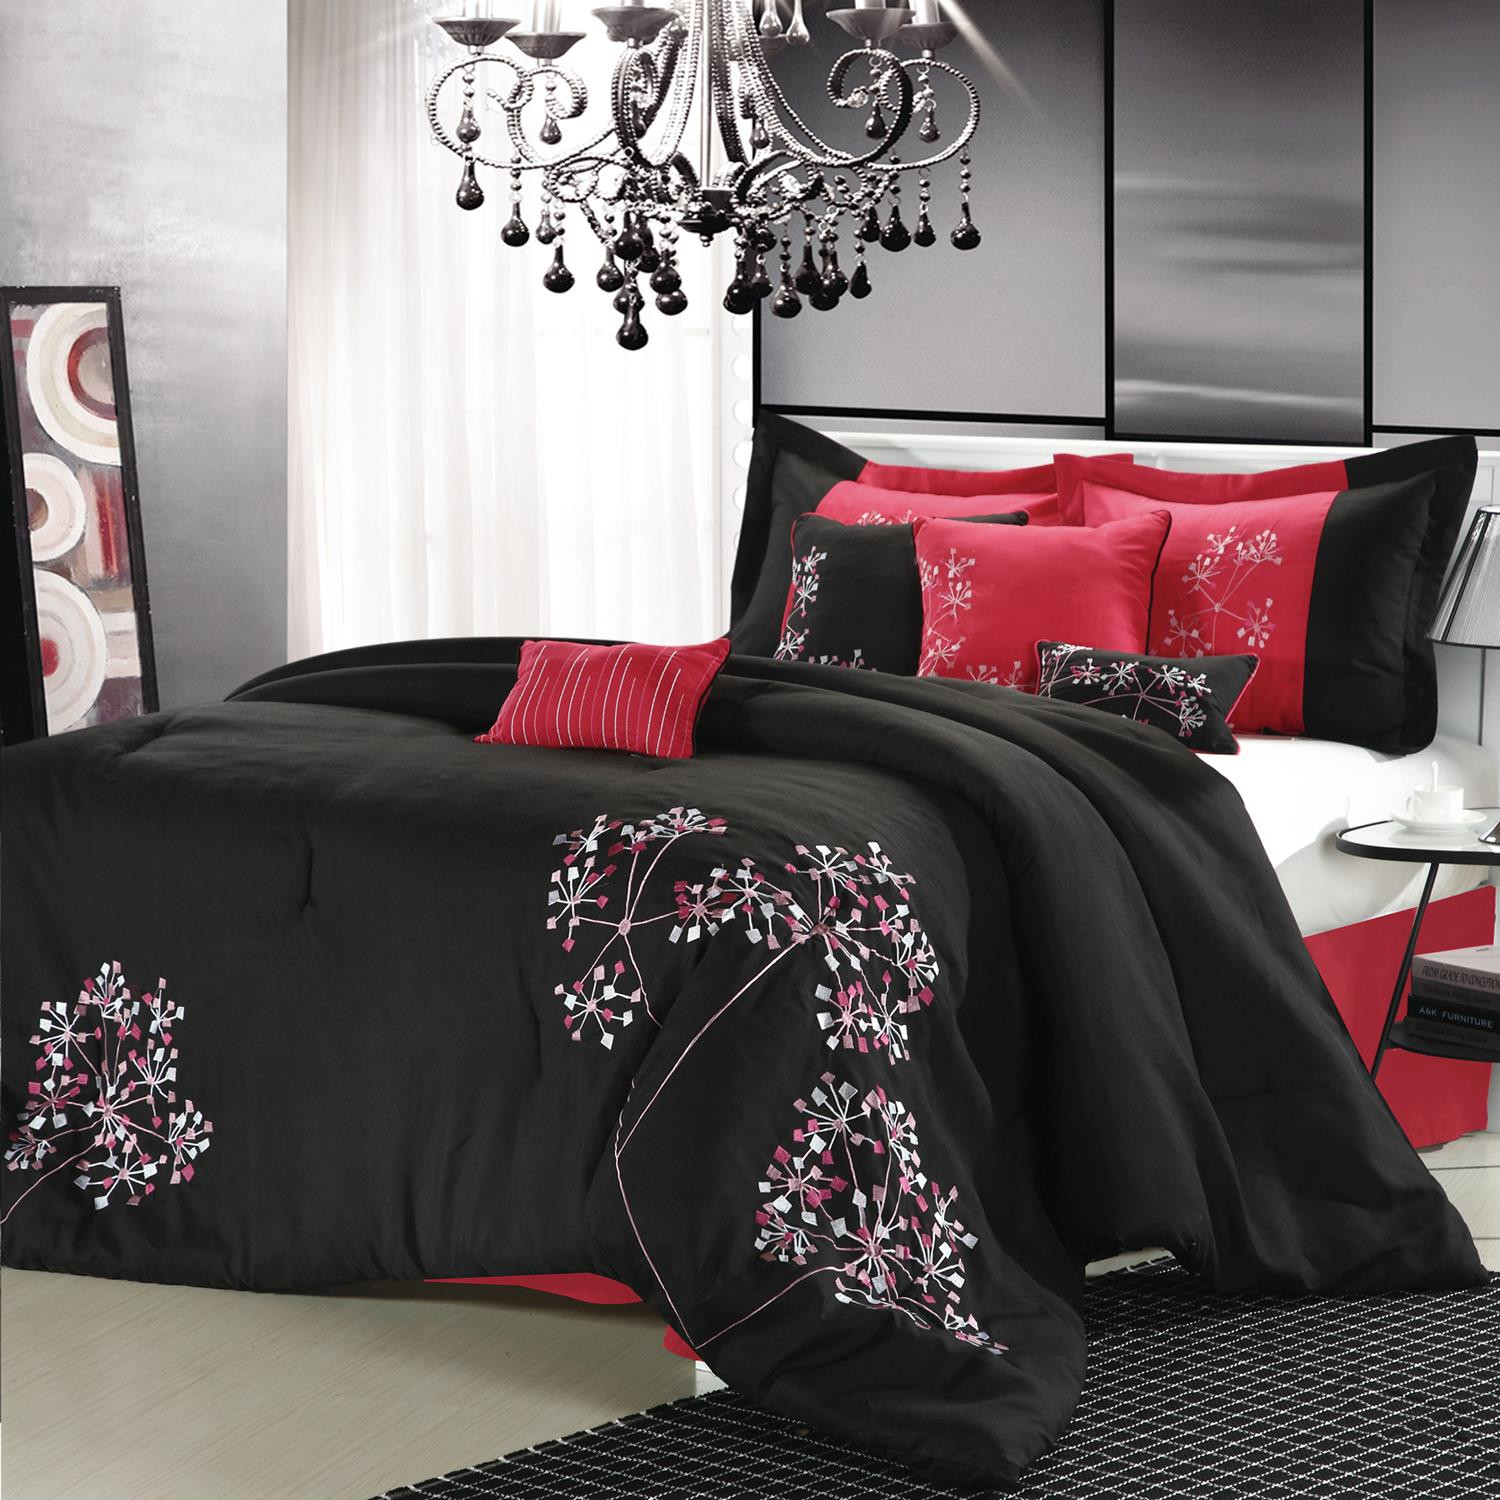 Pink Fl Black Comforter Bed, Red And Black King Bedding